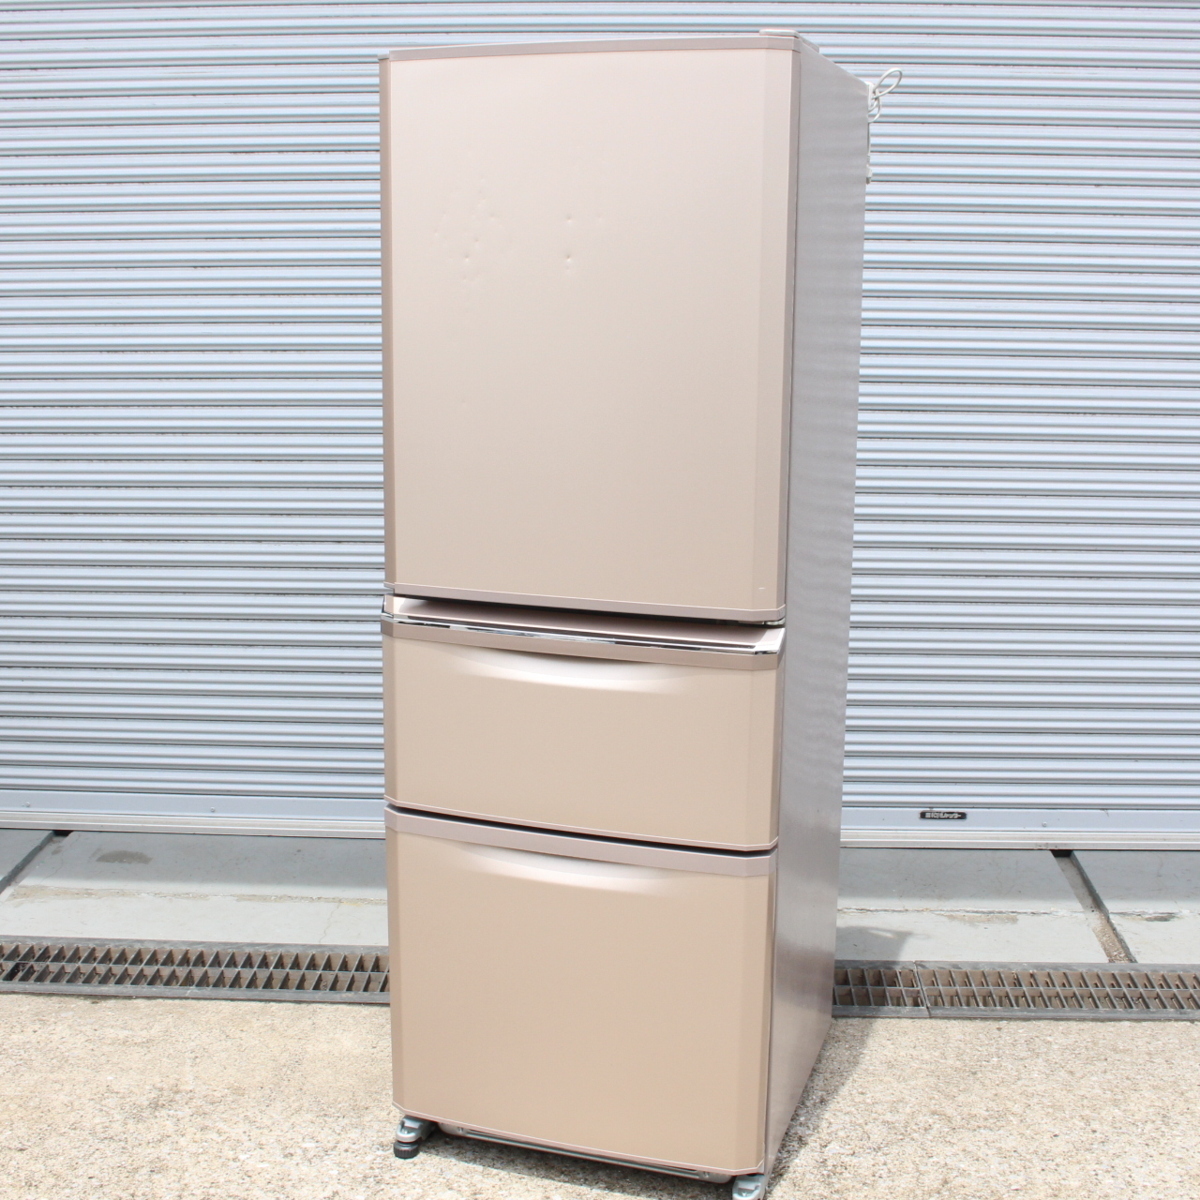 川崎市幸区にて 三菱 MITSUBISHI 冷凍冷蔵庫 MR-C34A-P 2017年製 を出張買取させて頂きました。